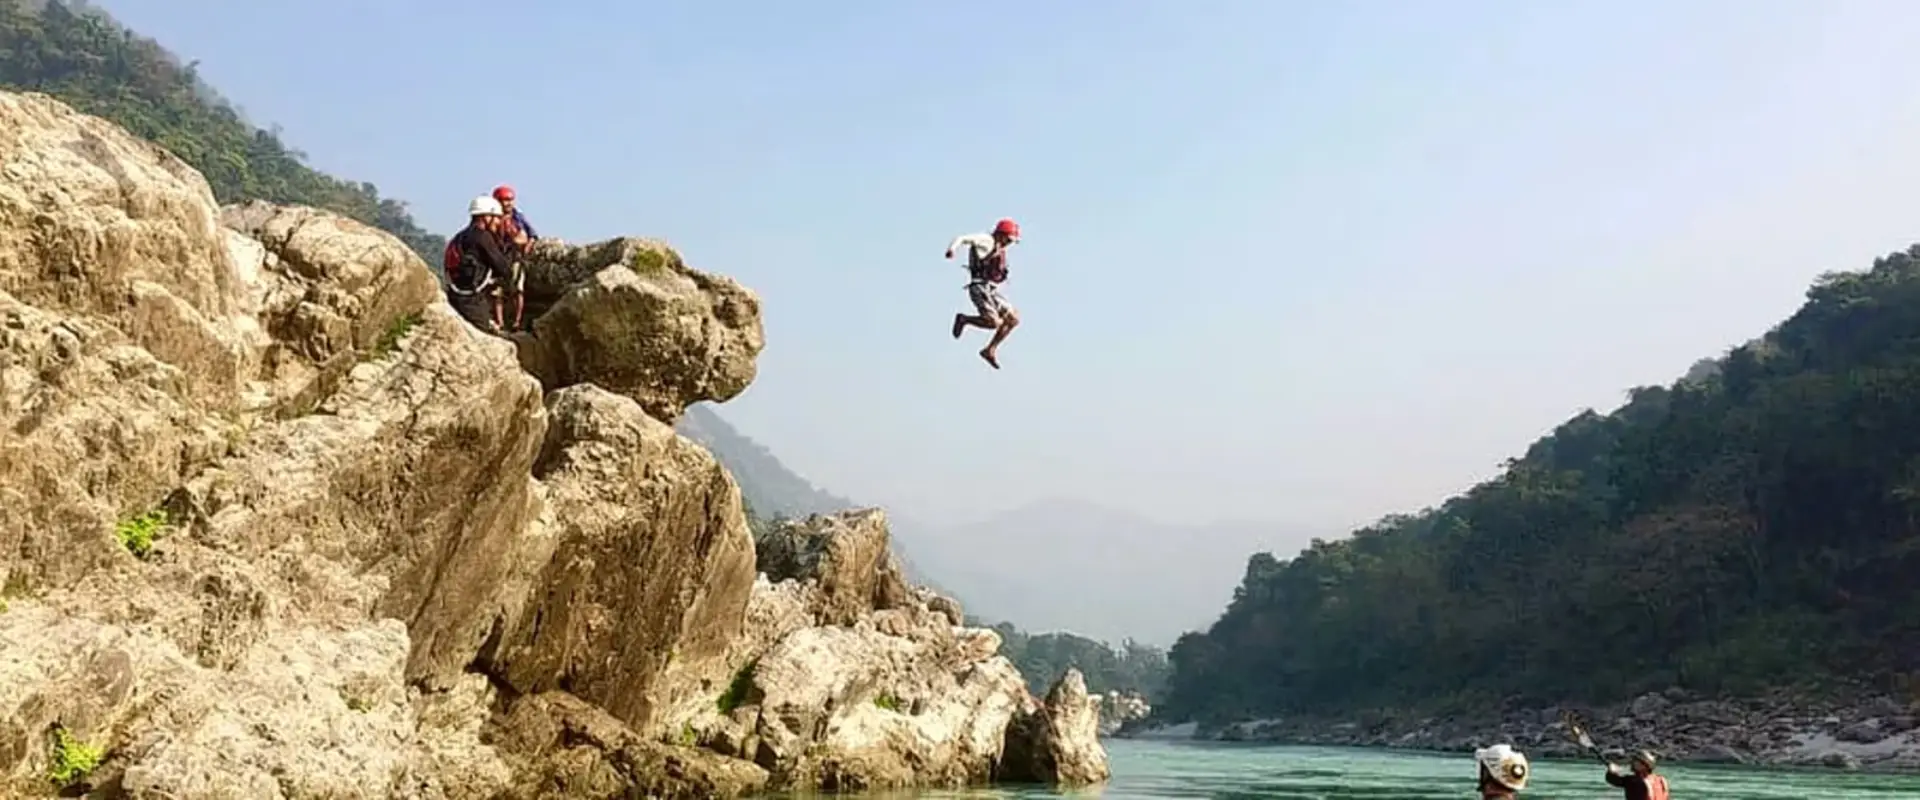 Rishikesh Cliff Jumping